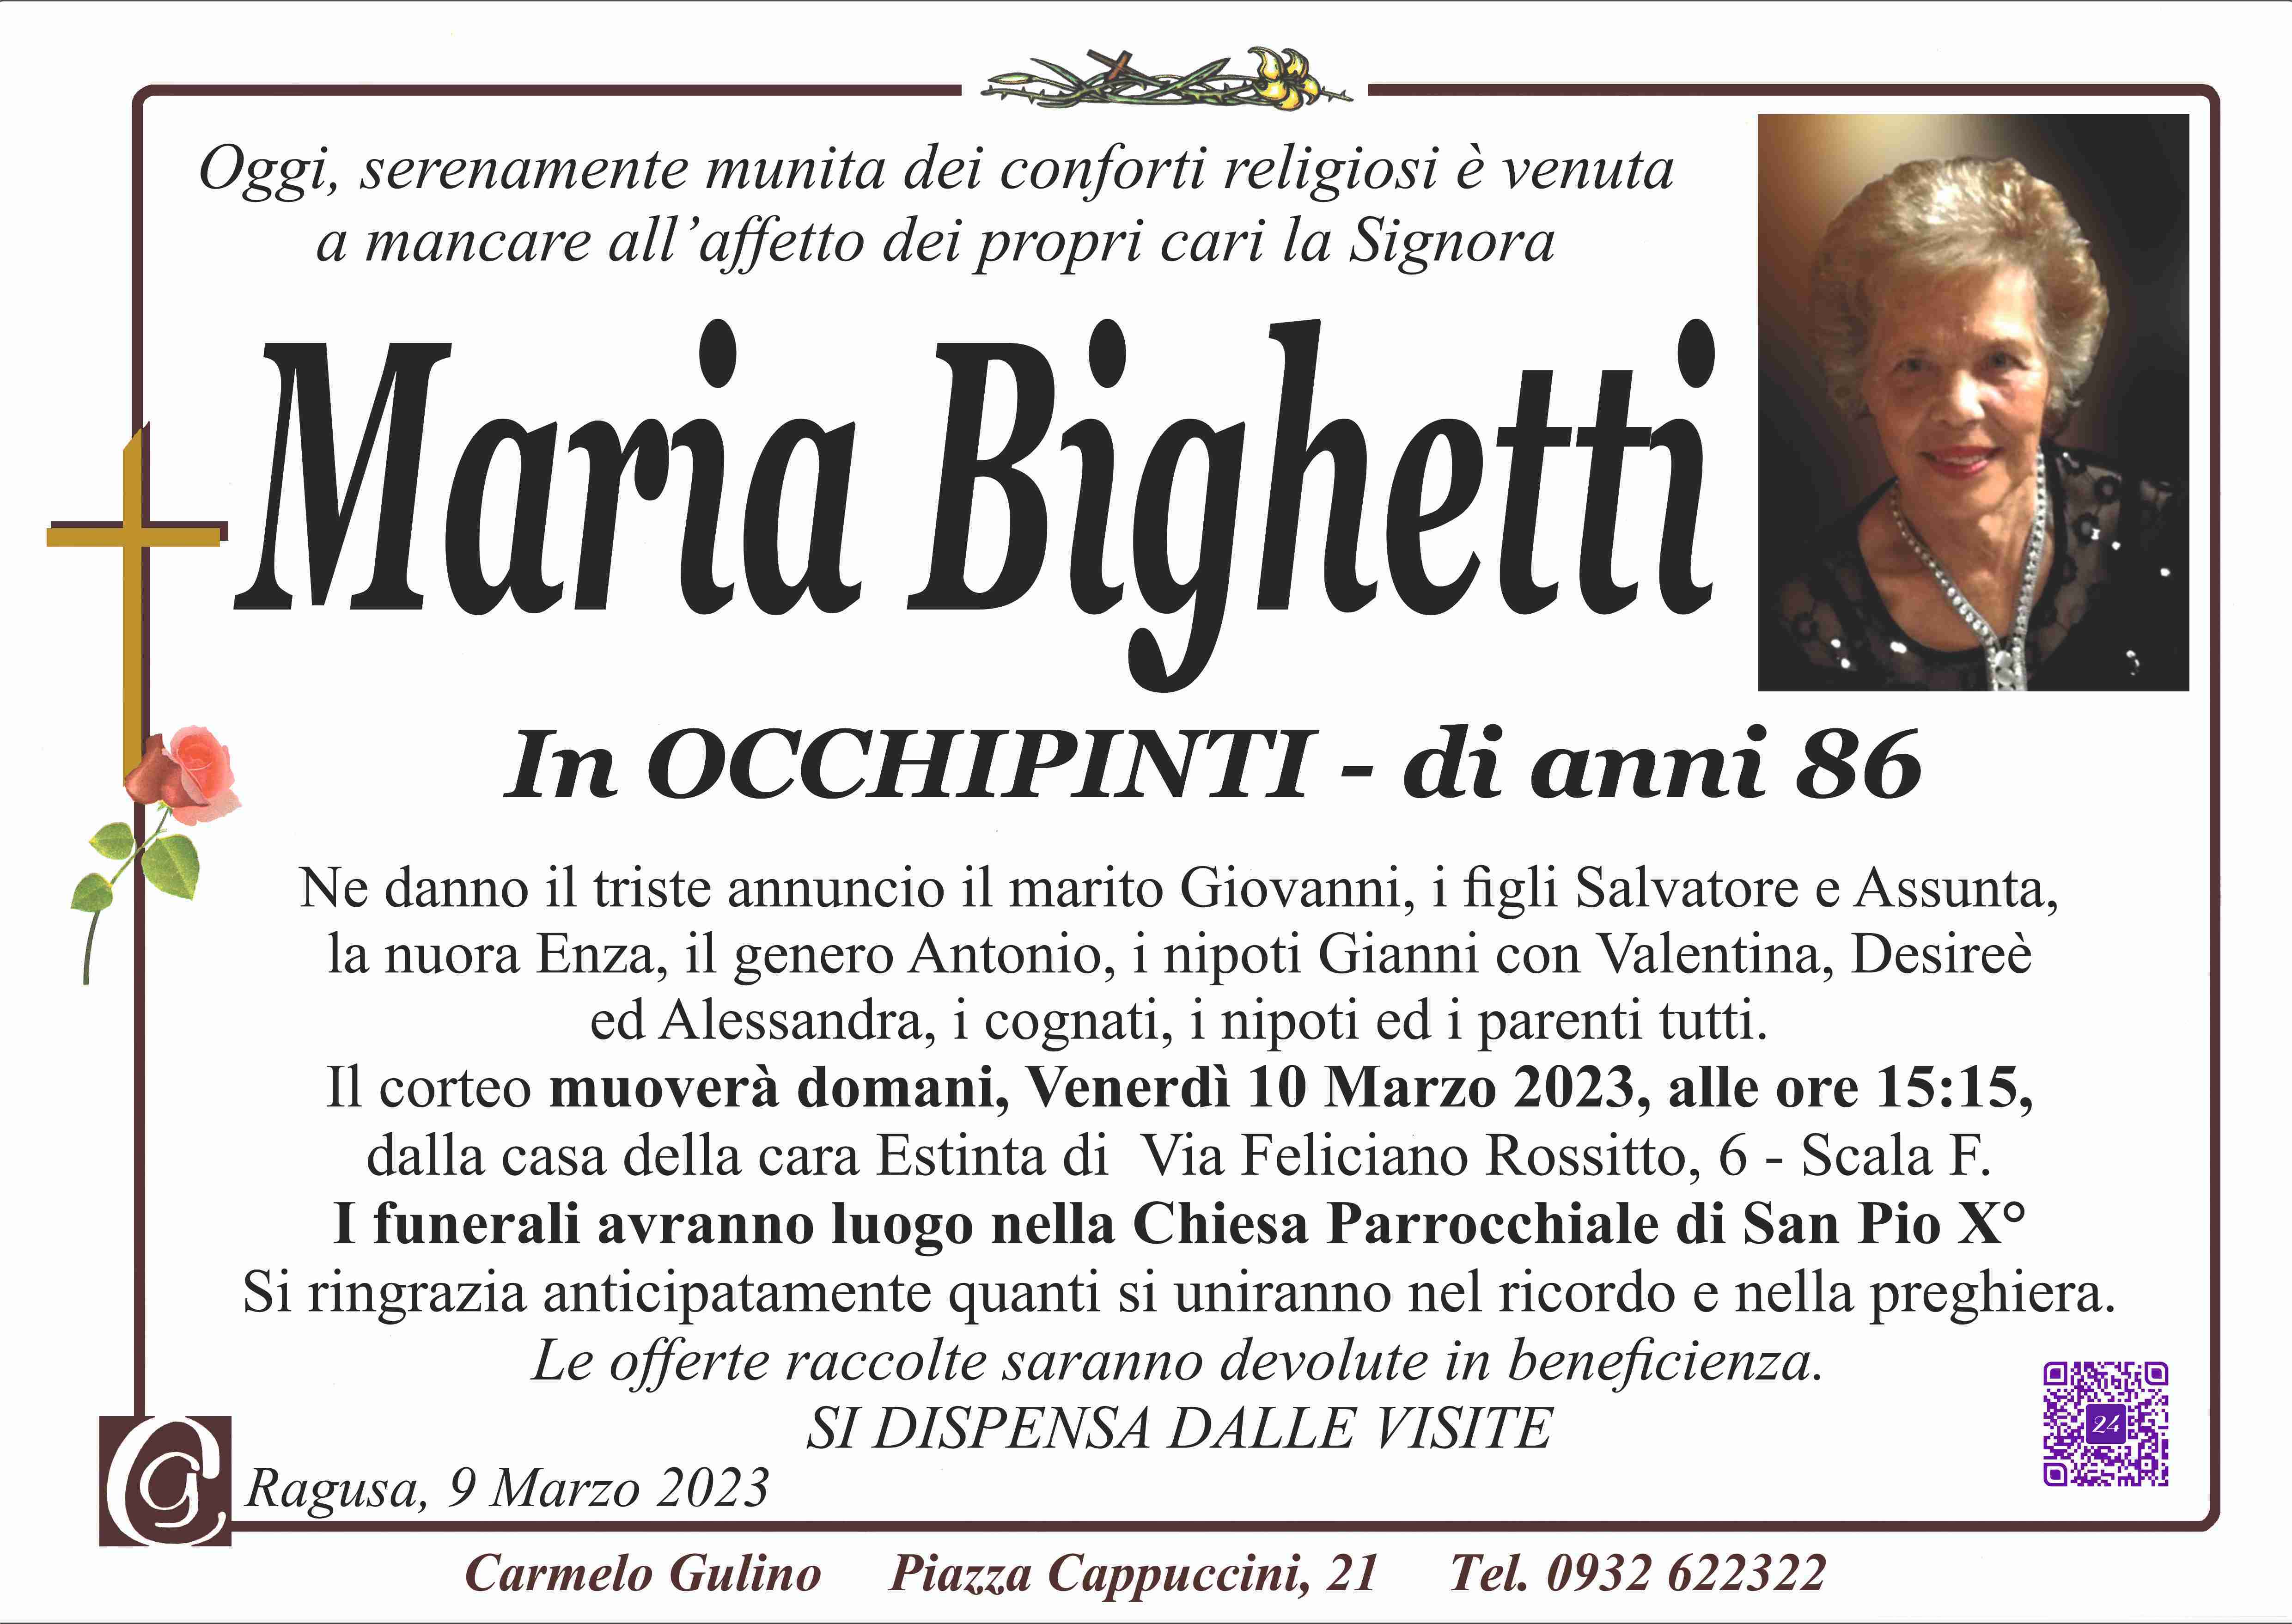 Maria Bighetti